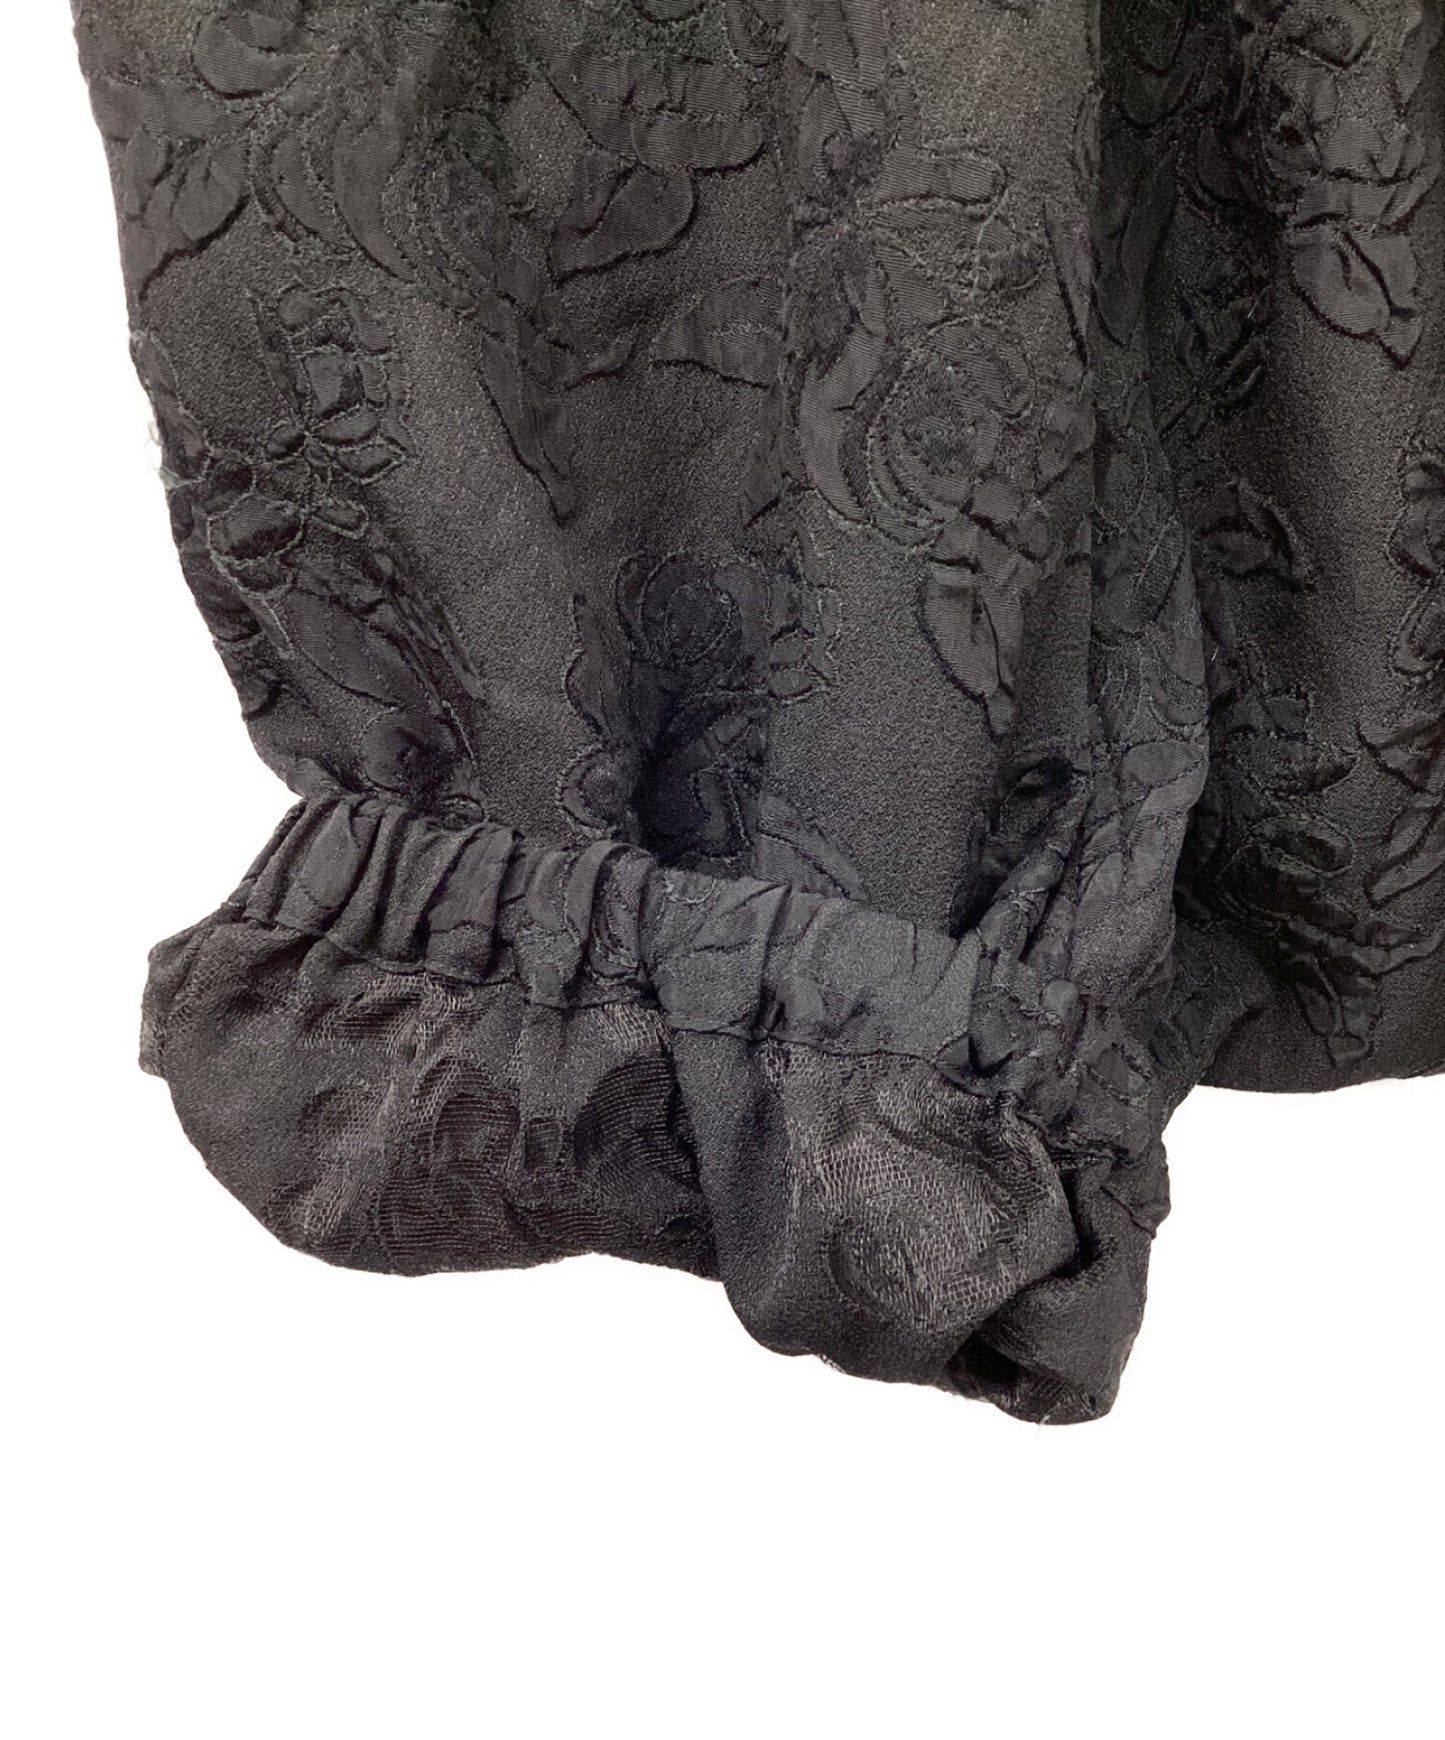 [Pre-owned] COMME des GARCONS COMME des GARCONS AD2012 Embroidery sarouel pants RJ-P027